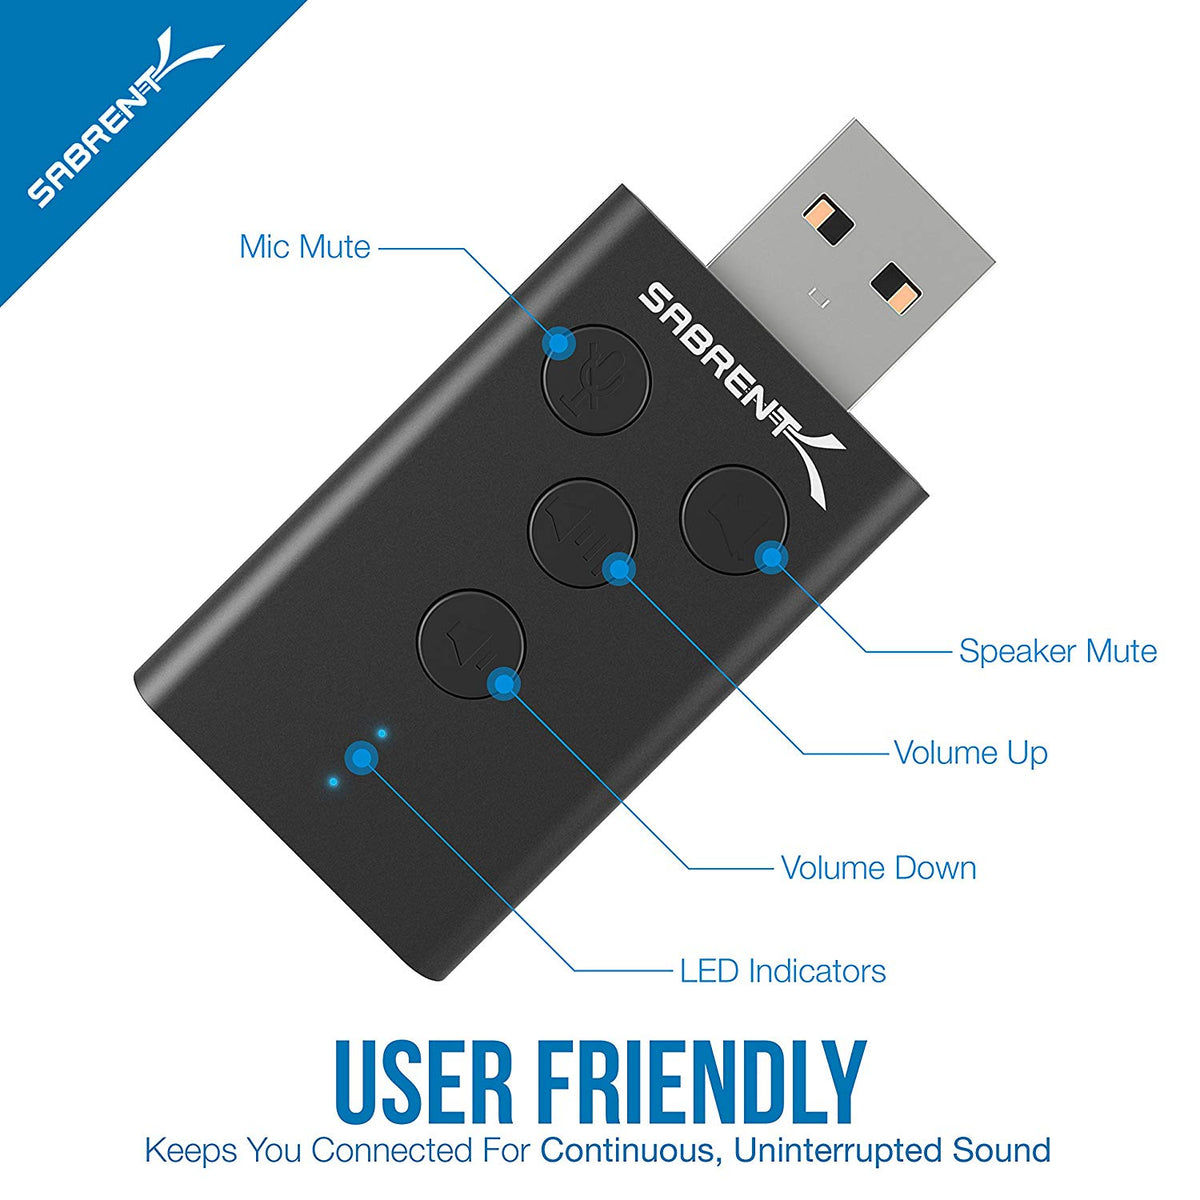 USB Aluminum External 3D Stereo Sound Adapter